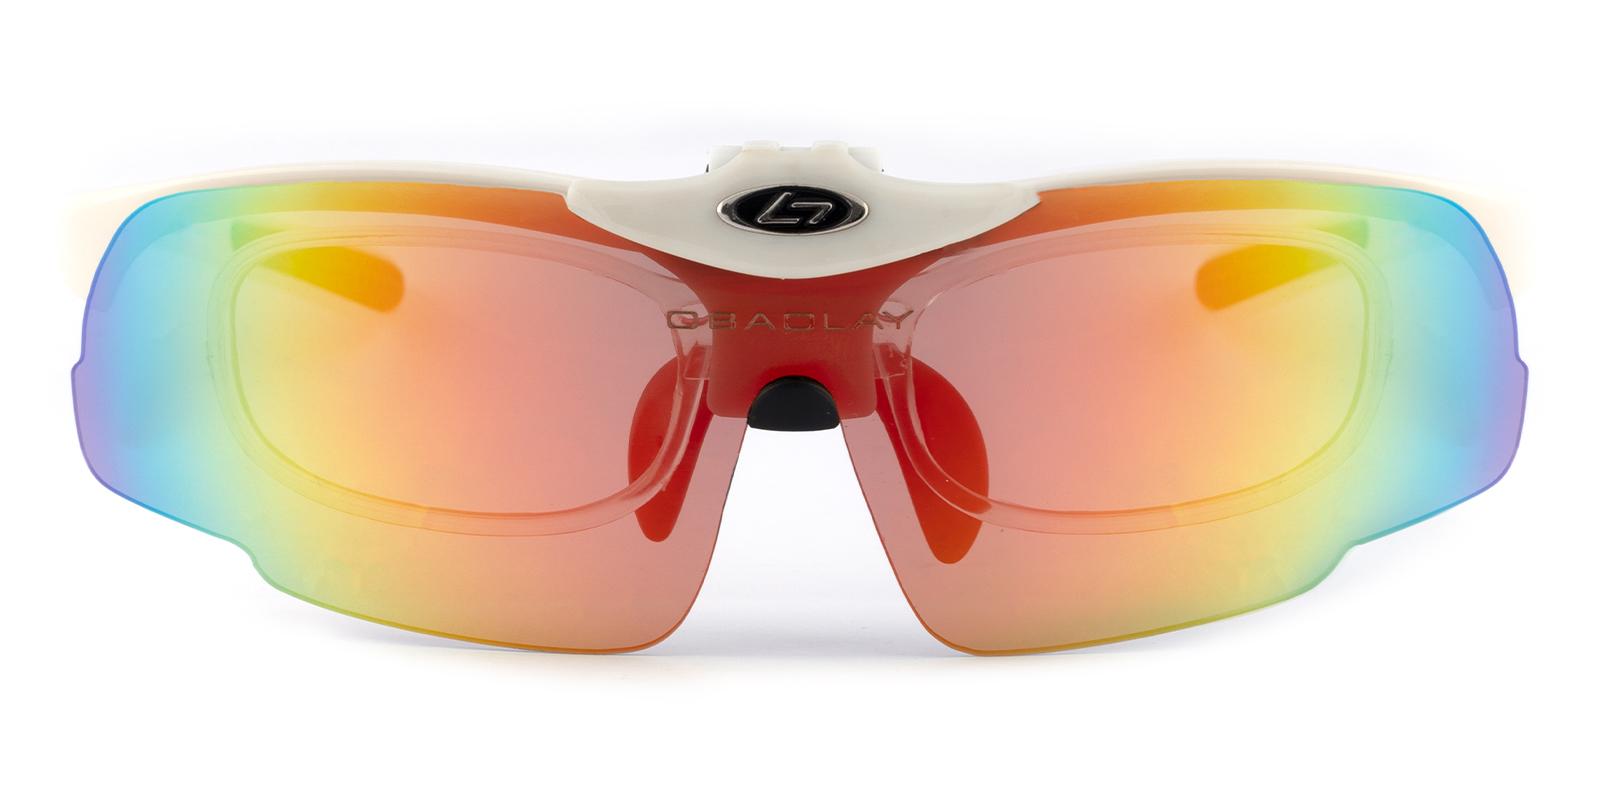 Hallo Bay White Plastic Eyeglasses , SportsGlasses Frames from ABBE Glasses